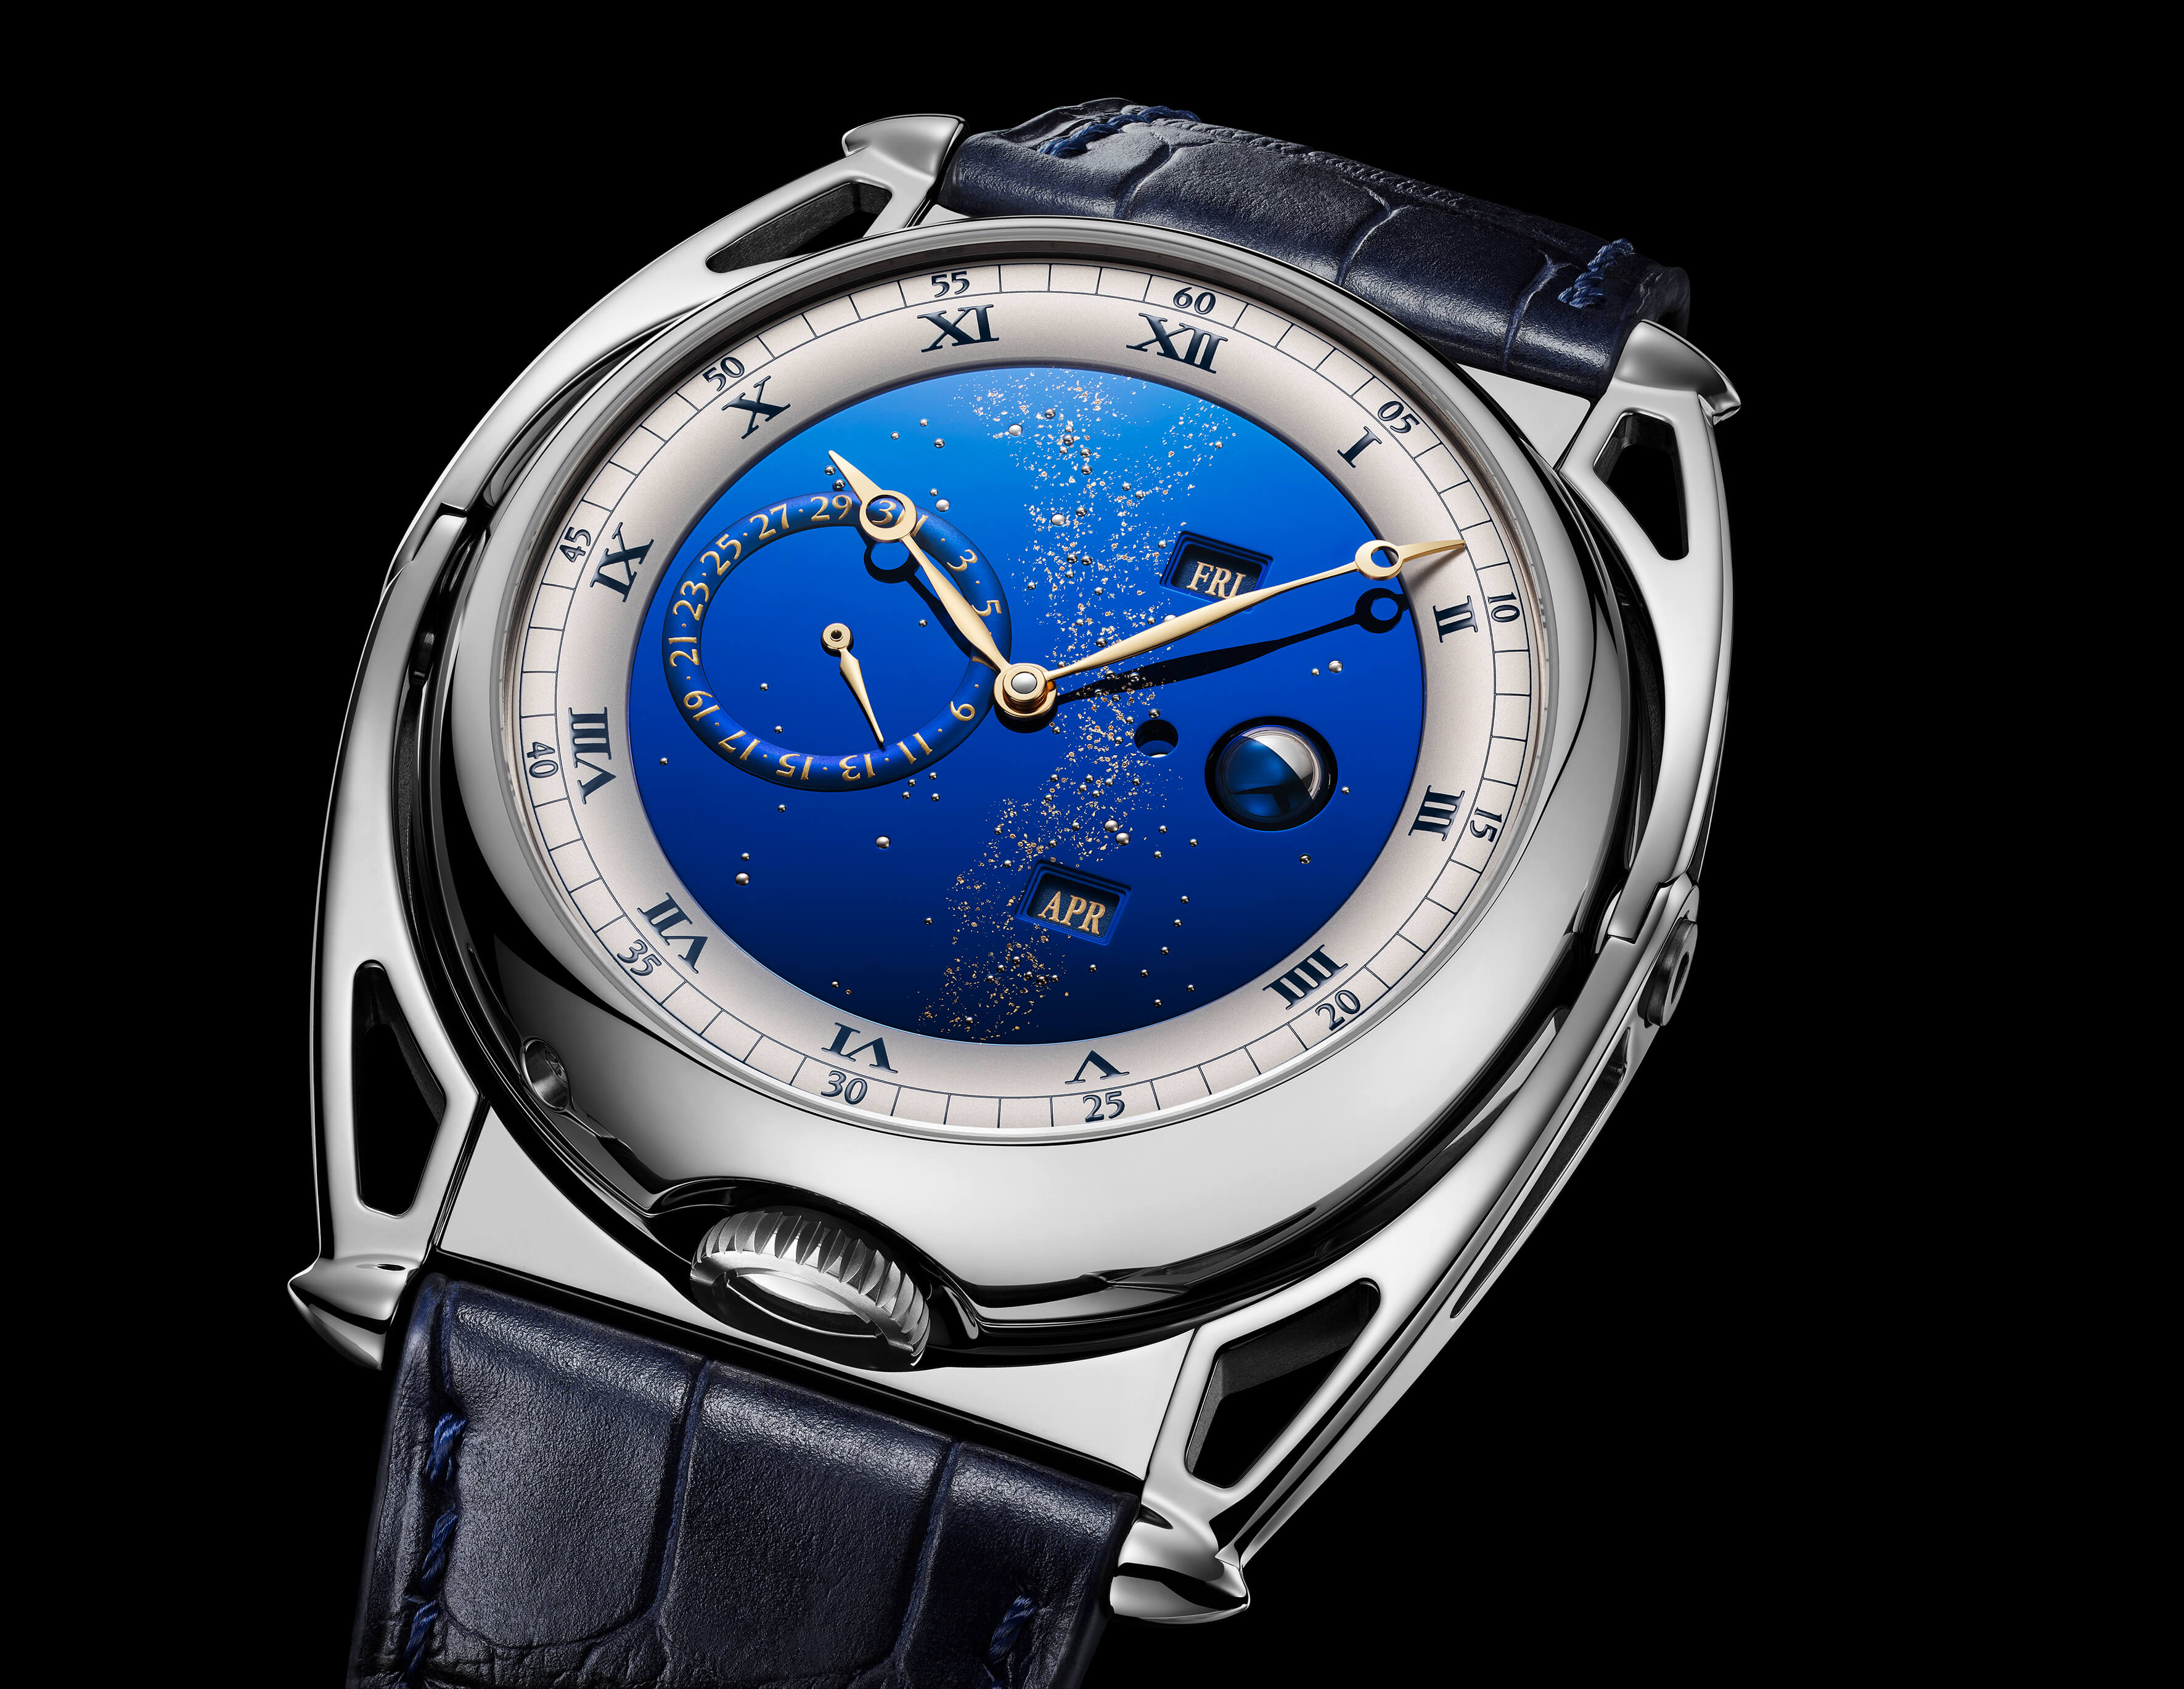 Futuristic blue watch